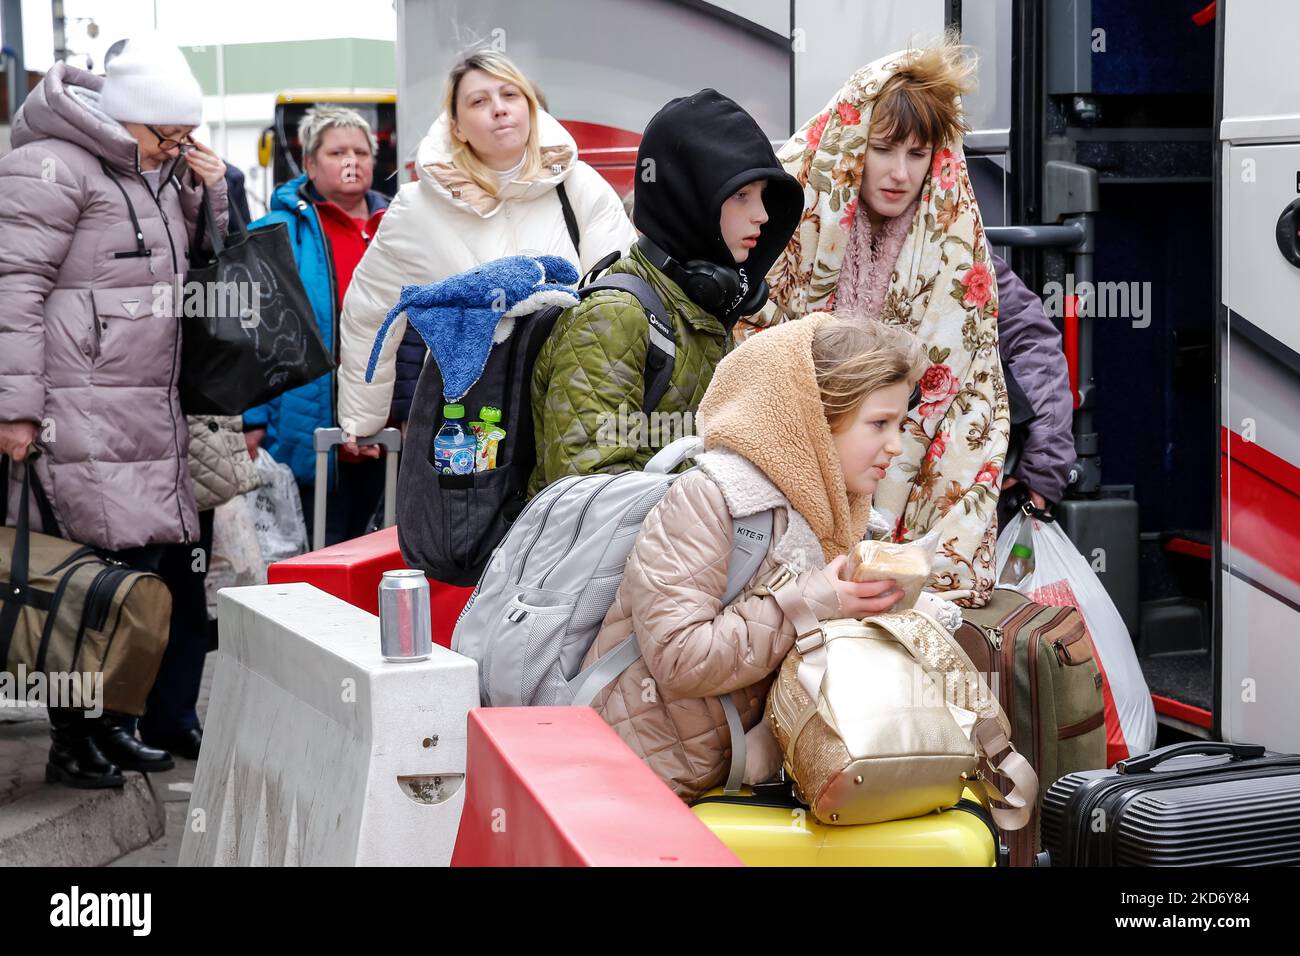 I rifugiati ucraini salgono a bordo di un pullman al confine tra Ucraina e Polonia Medyka mentre viaggiano con l'agenzia di viaggi Abdar da Lviv a Cracovia, Polonia il 5 aprile 2022. Mentre la Federazione Russa invase l'Ucraina, il conflitto dovrebbe costringere fino a 5 milioni di ucraini a fuggire dal paese. Molti rifugiati cercano asilo in Polonia. La maggior parte degli aiuti di beneficenza in Polonia è fornita da individui, ONG e imprese. Abdar agenzia di viaggi è un business gestito da matrimonio misto - ucraino Olga e polacco Maciej Oszal. Dall'inizio del conflitto la coppia guida un allenatore a Lviv per consegnare l'umanitaria Foto Stock